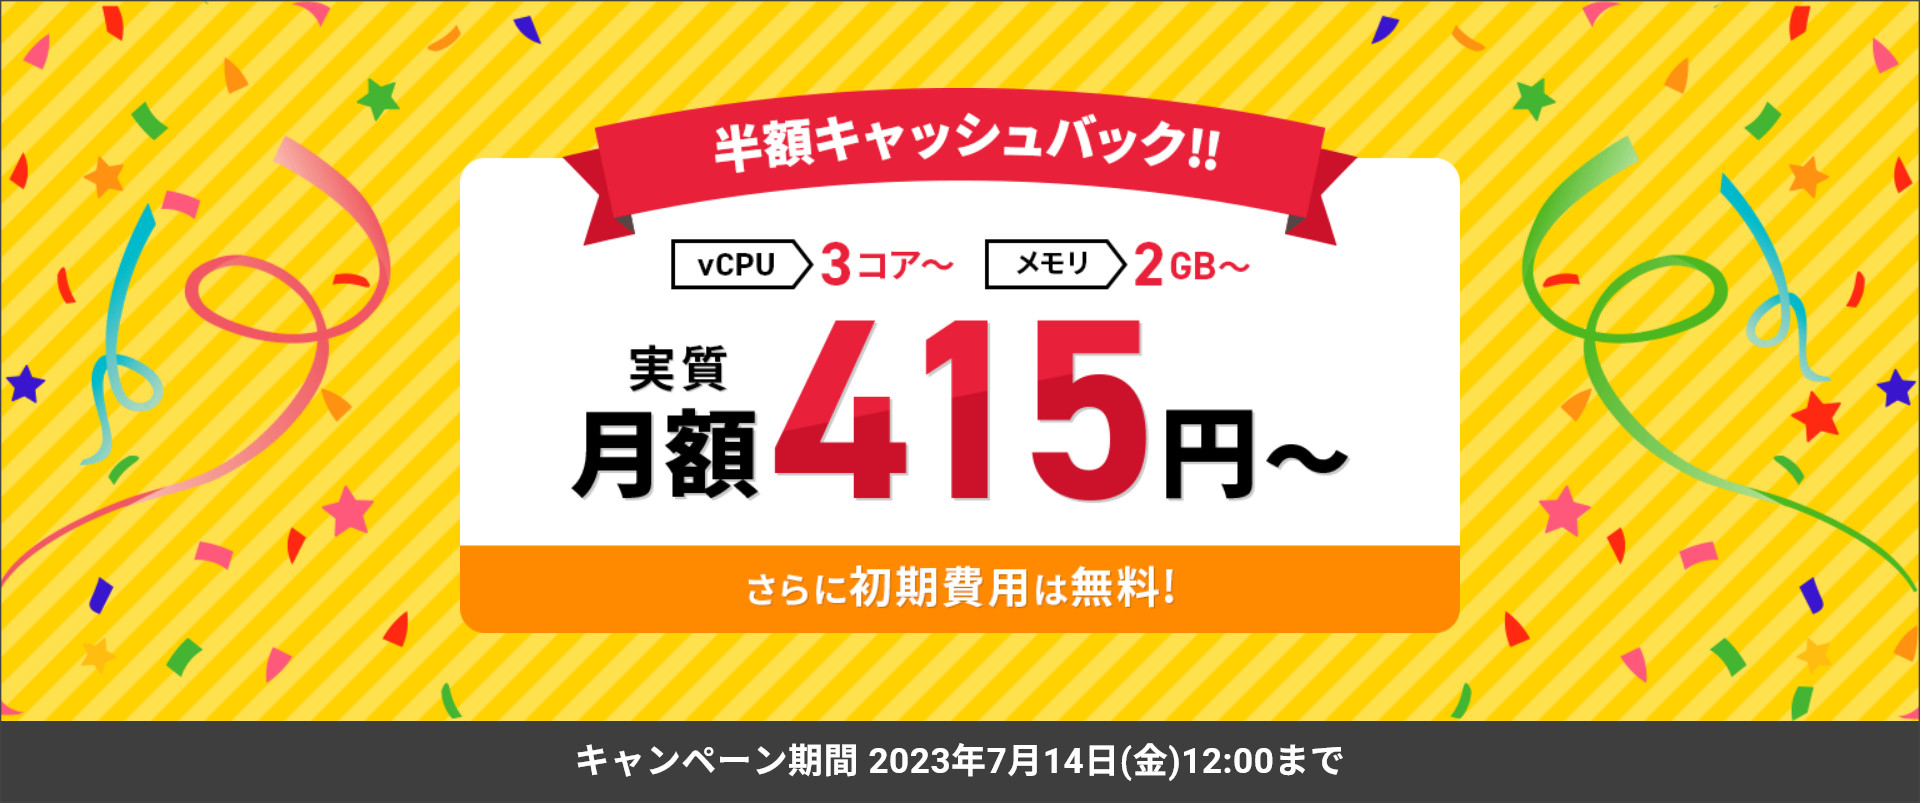 Xserver VPS for Game半額キャッシュバック